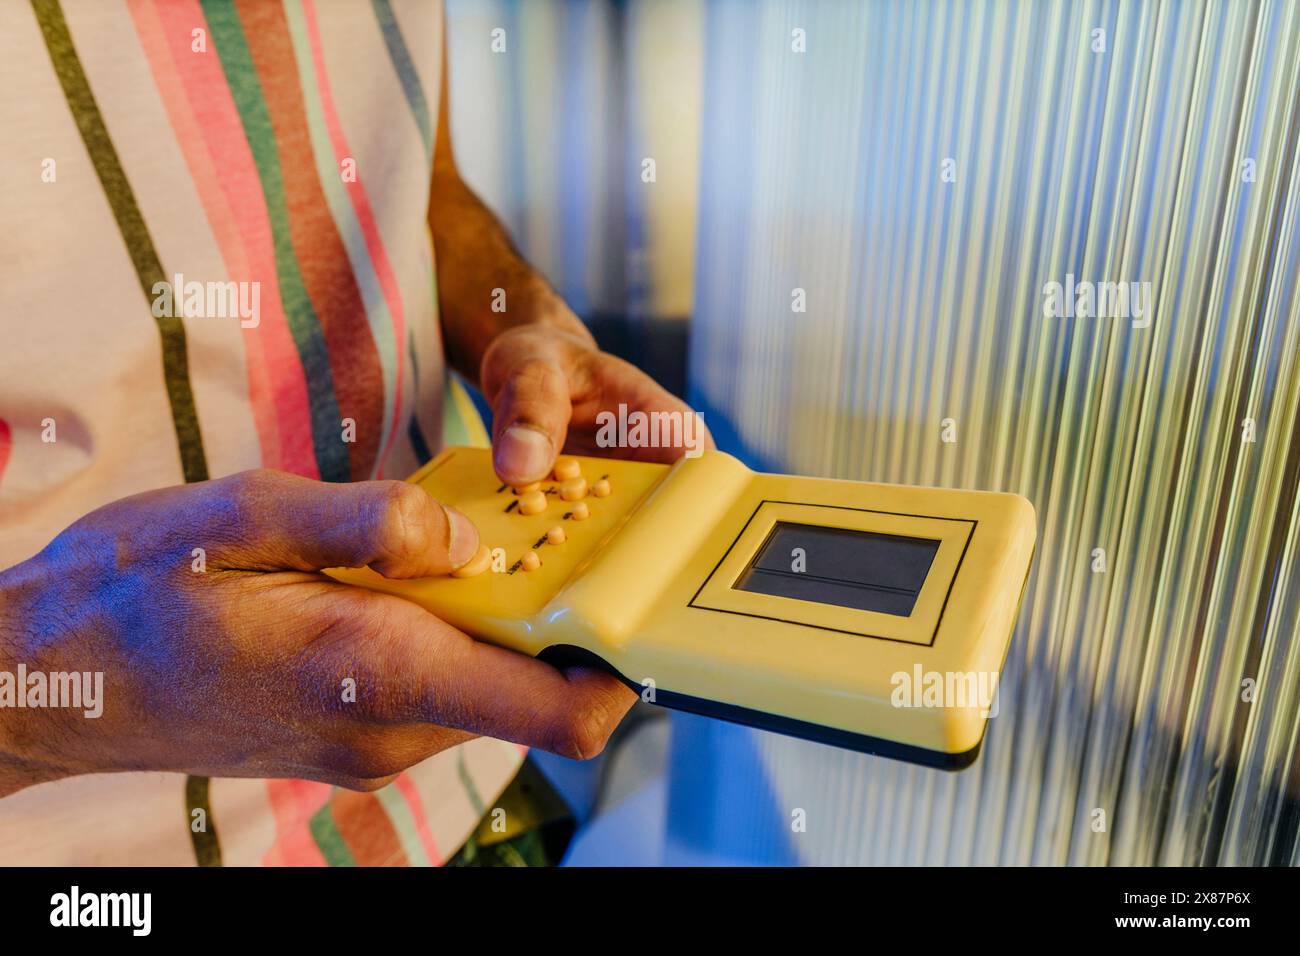 Uomo che gioca a un gioco portatile di colore giallo vicino a un muro a righe Foto Stock